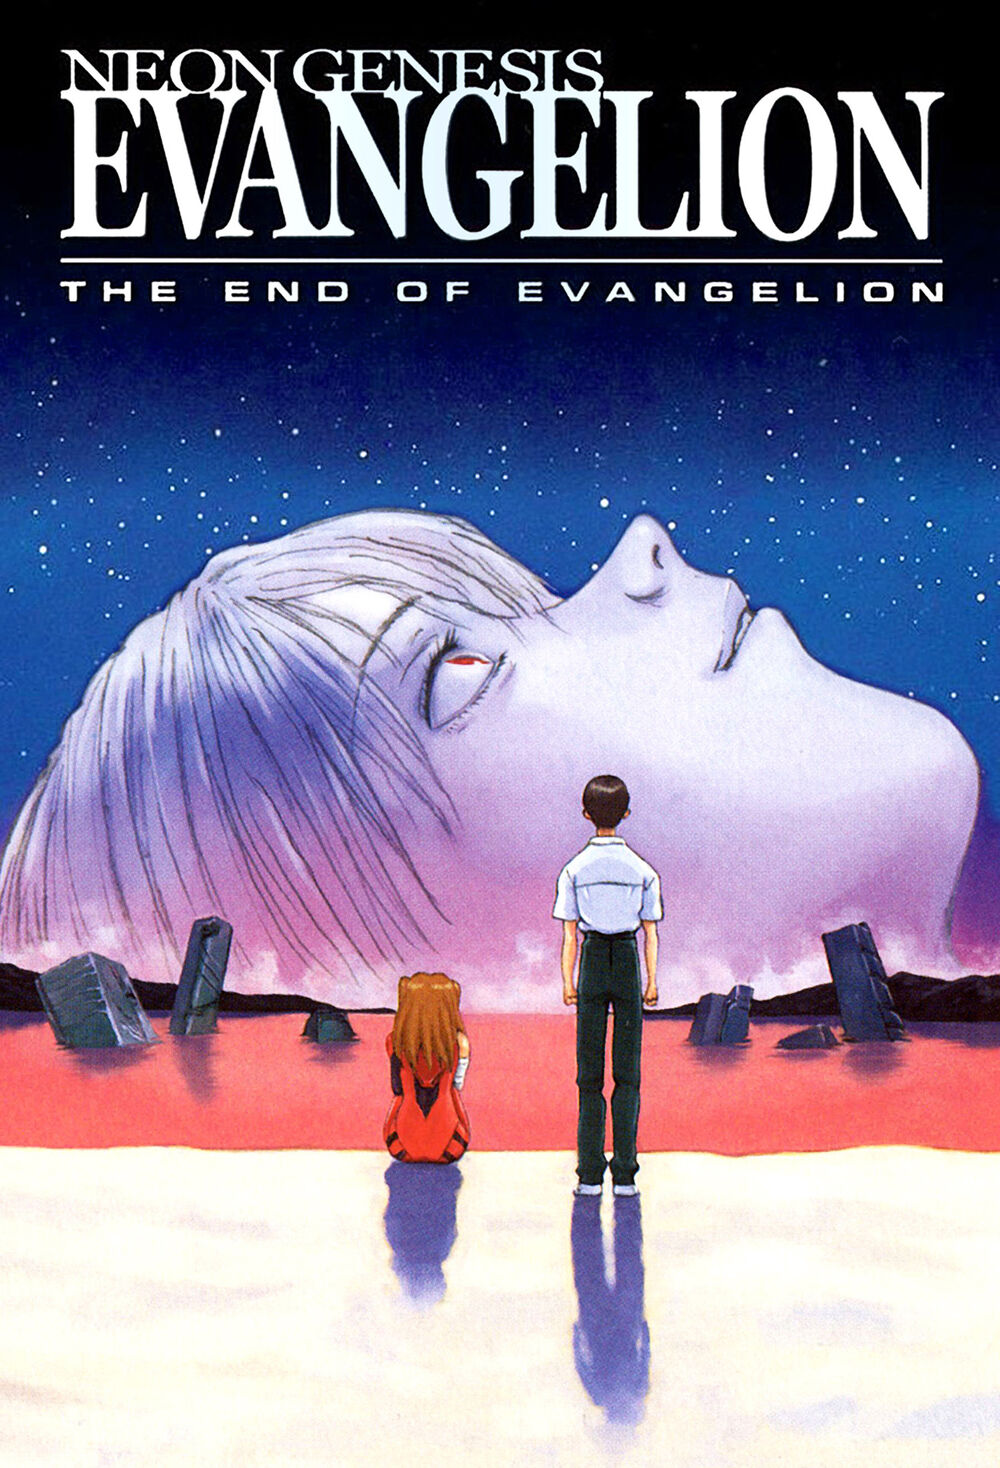 EvangelionBR - Evangelion Volume #14 / #27 (FINAL) já nas bancas!